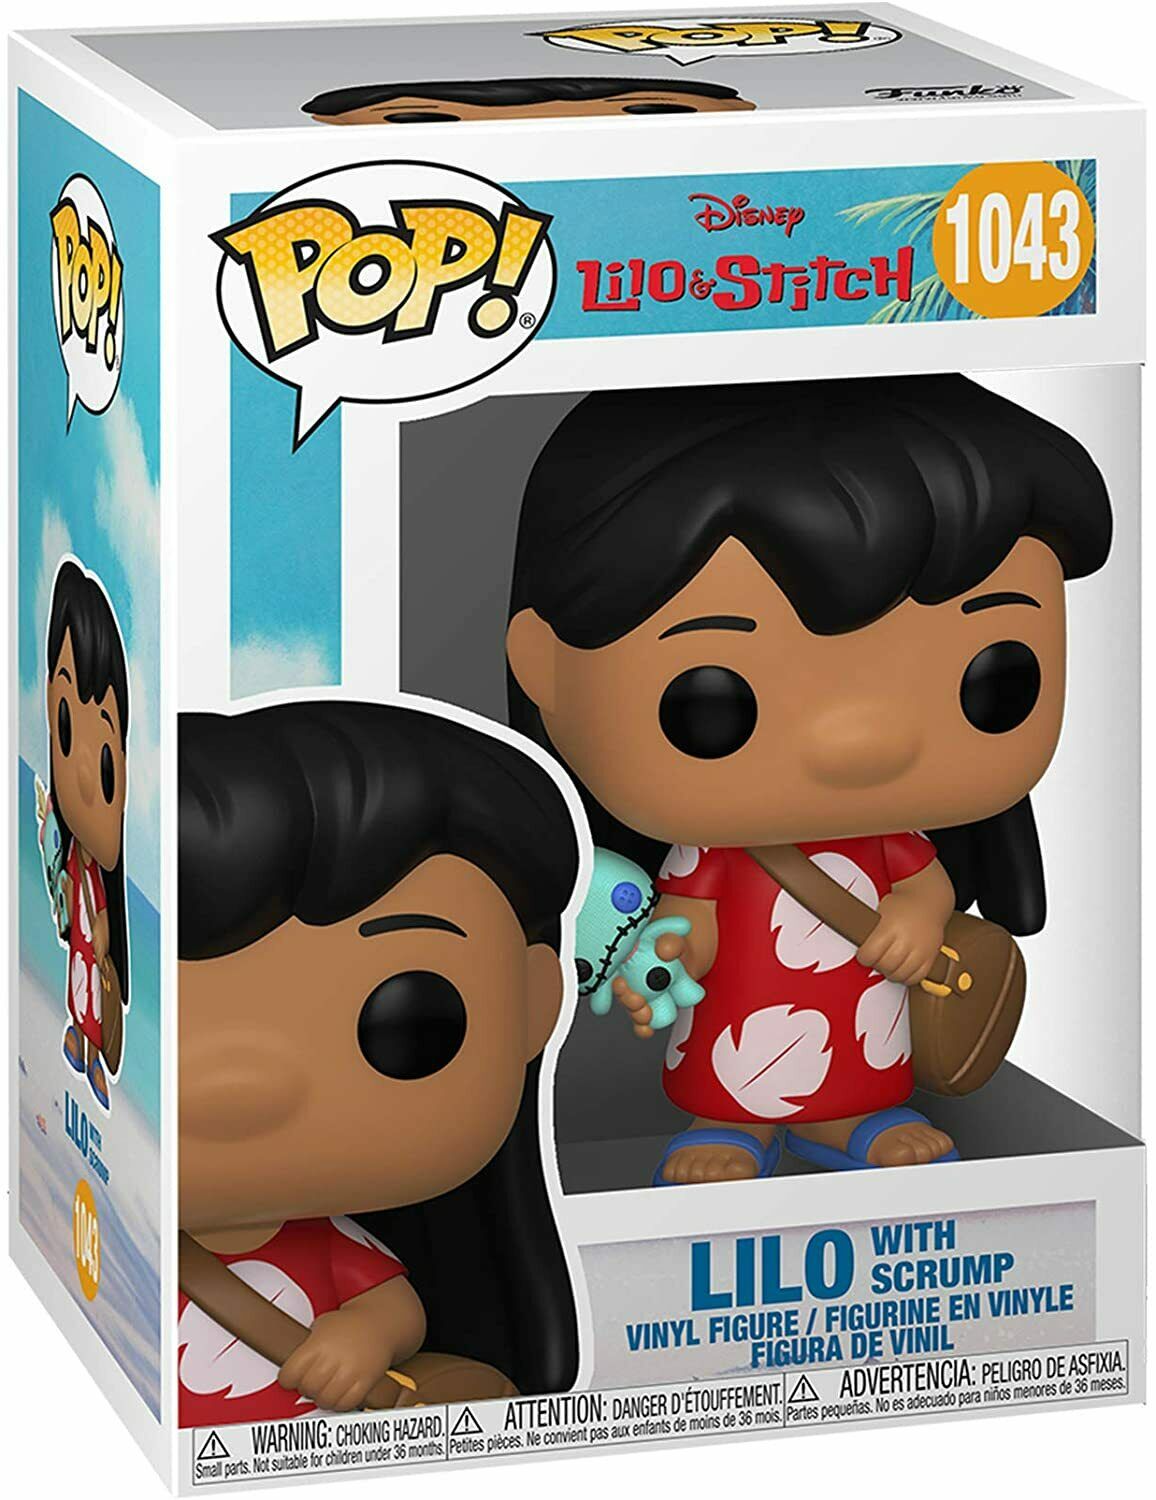 Funko POP! Disney: Lilo & Stitch Avengers - Lilo with Scrump #1043